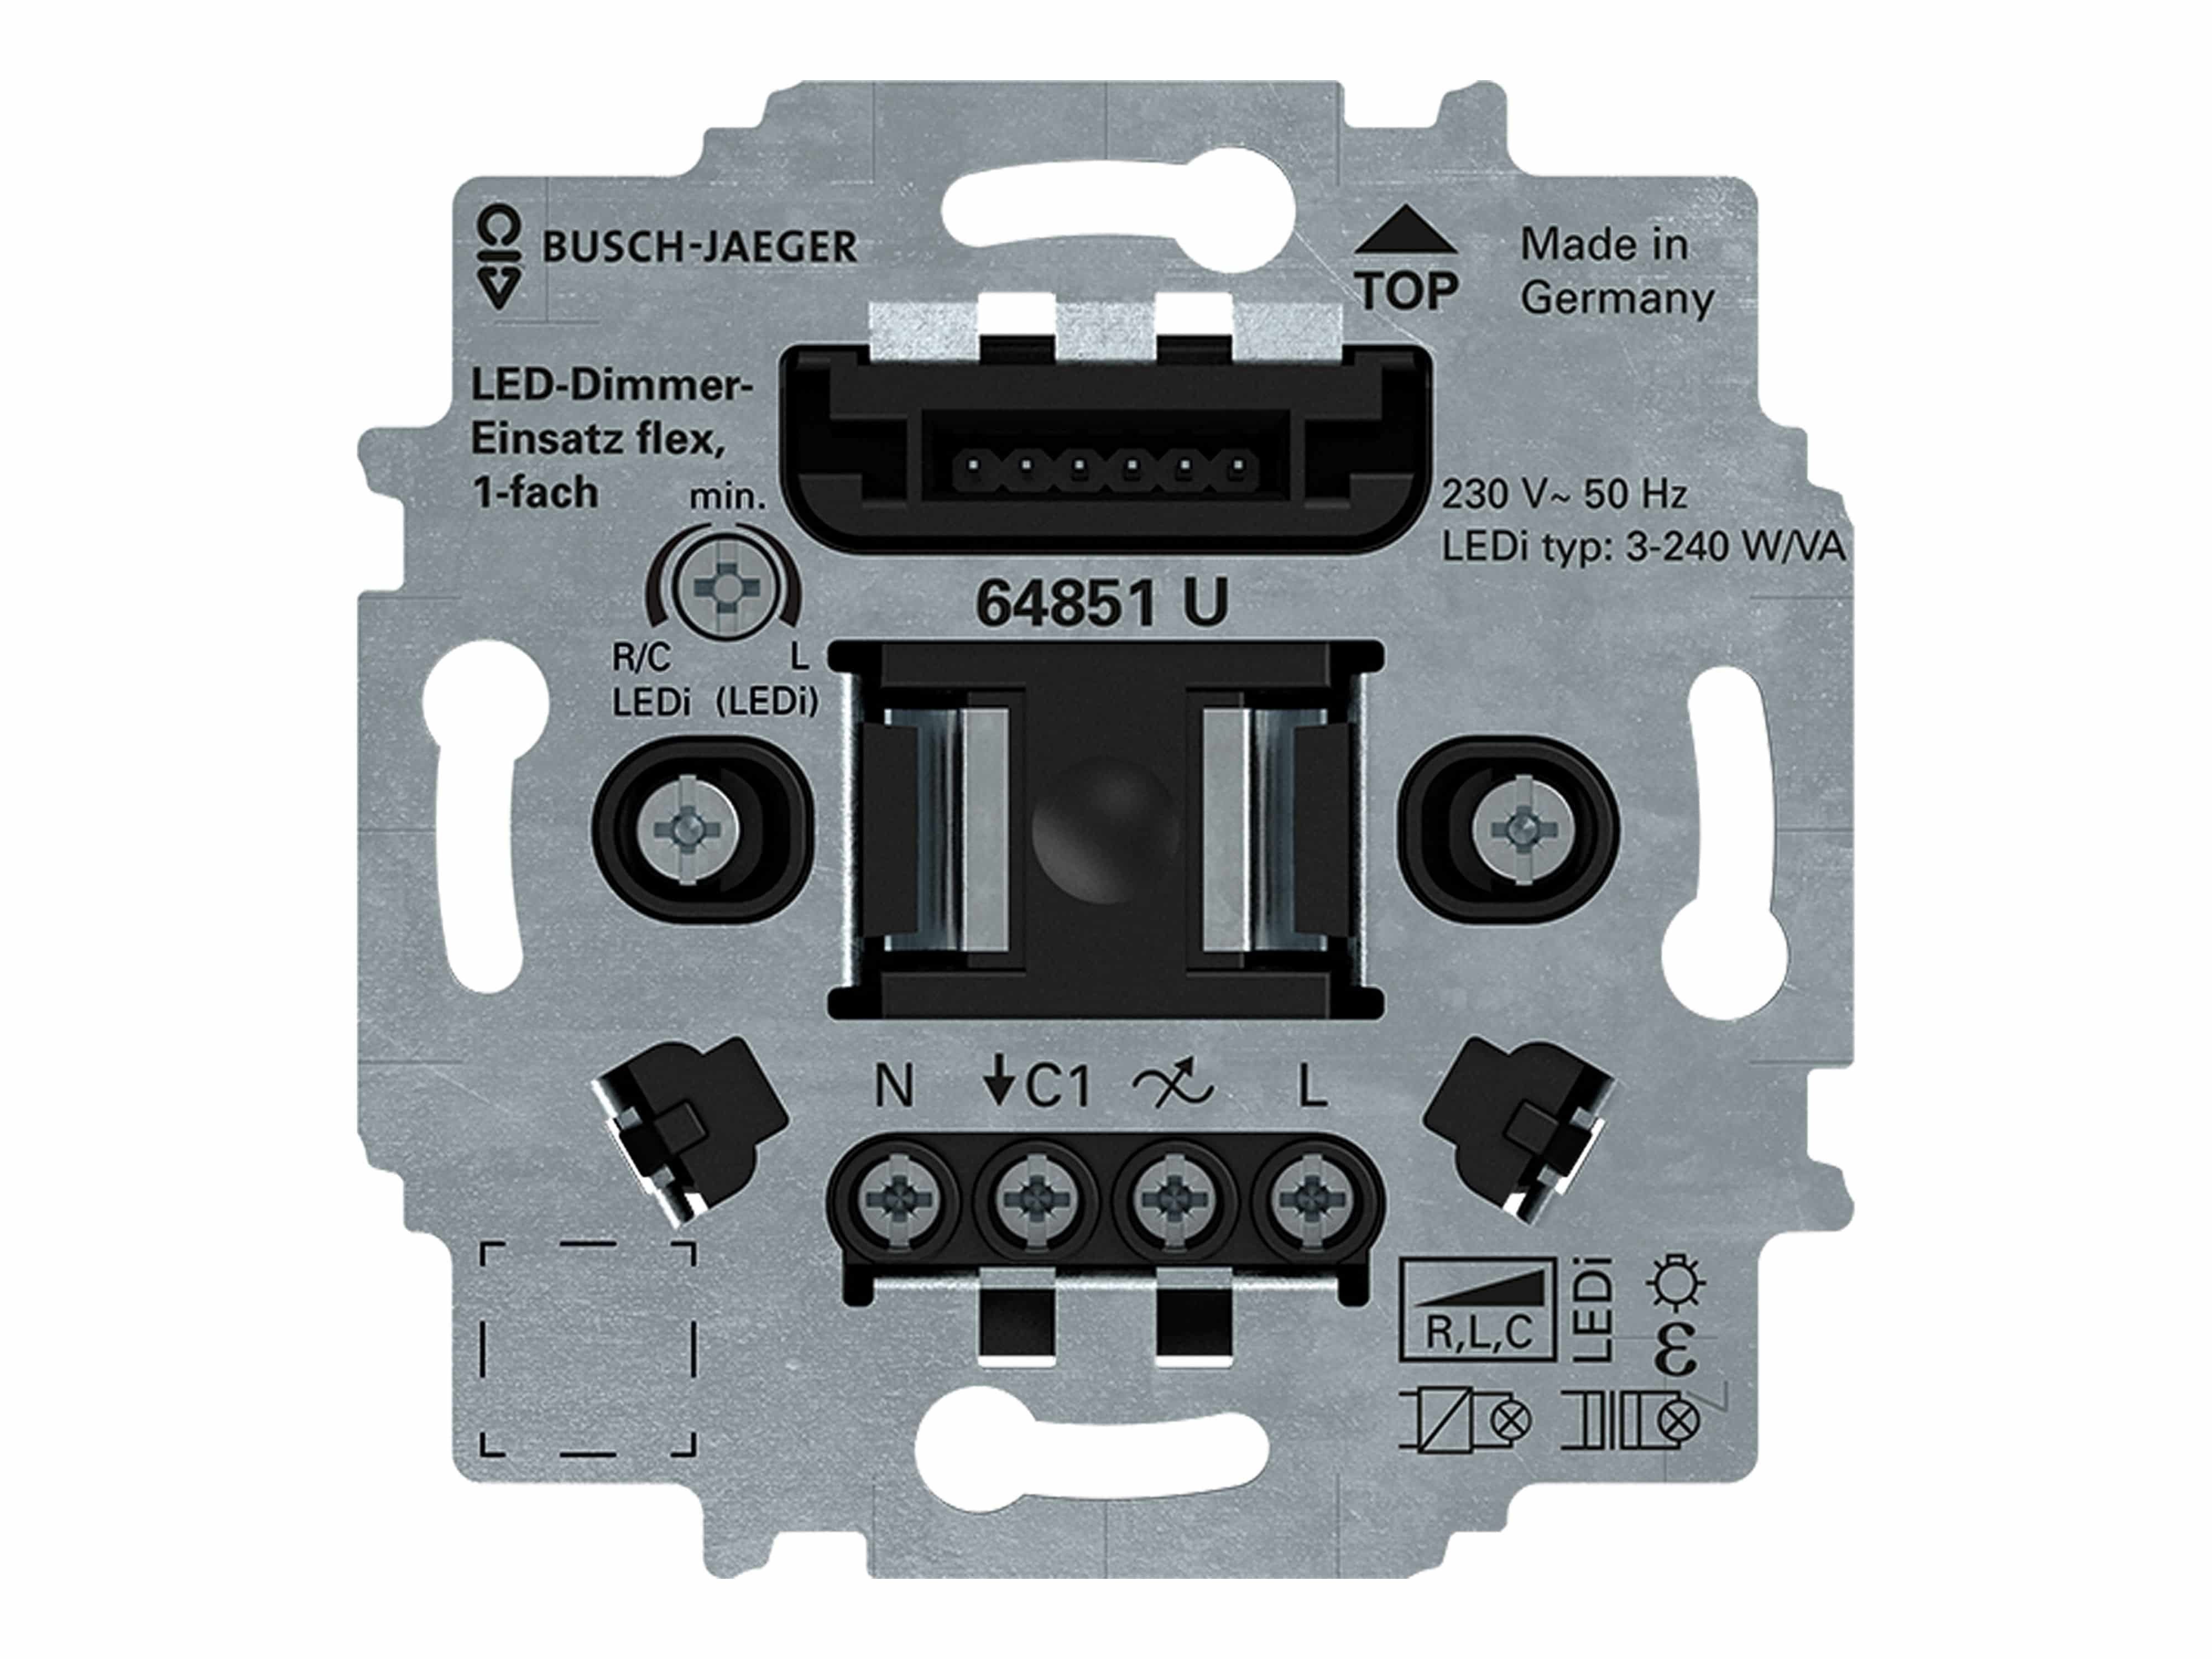 64851 BUSCH-JAEGER Schalter LED-Dimmer-Einsatz flex Busch-Jaeger U